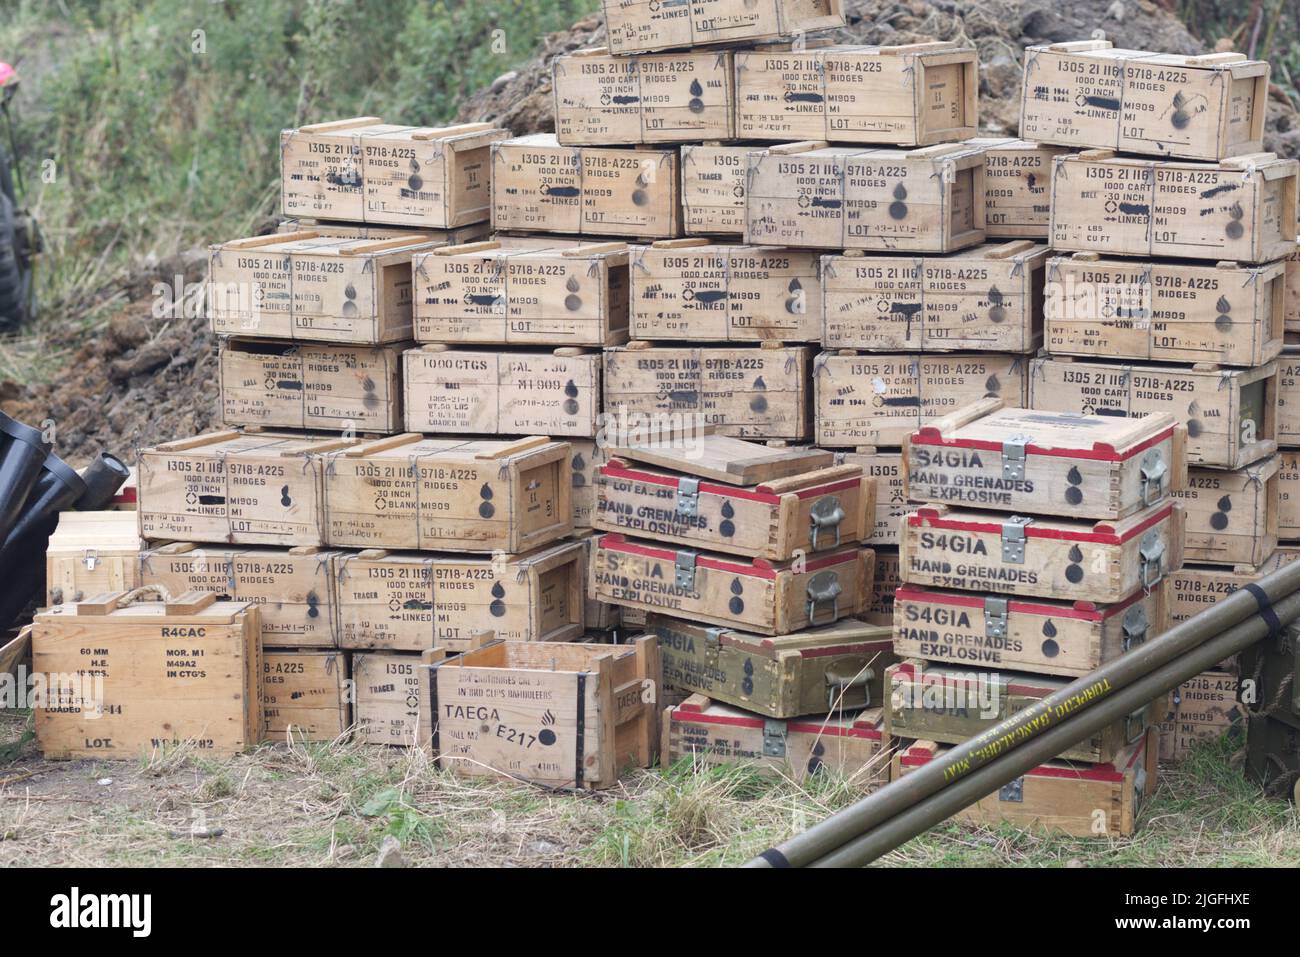 Cajas de S4GIA granadas de mano, explosivos Foto de stock